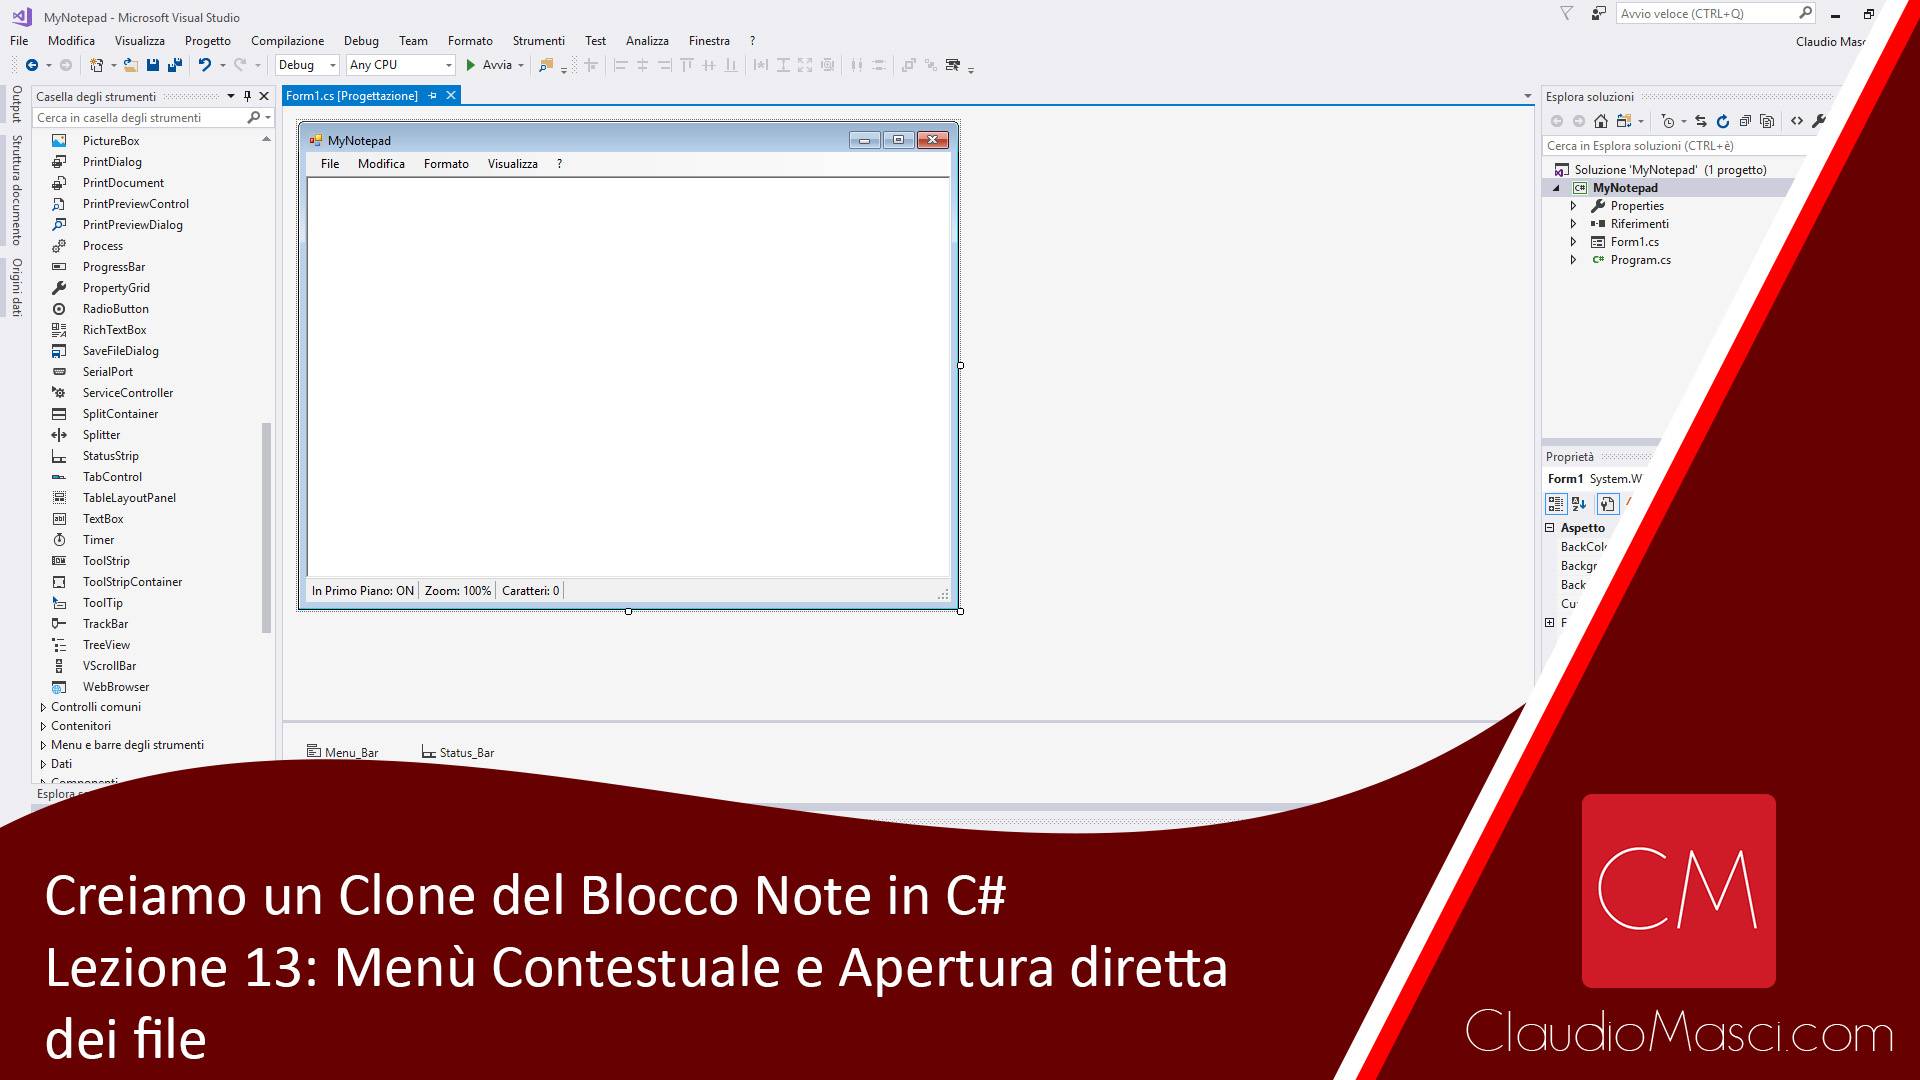 Creiamo un clone del Blocco Note in C# – Lezione 13: Il menù Contestuale e L’apertura diretta dei file